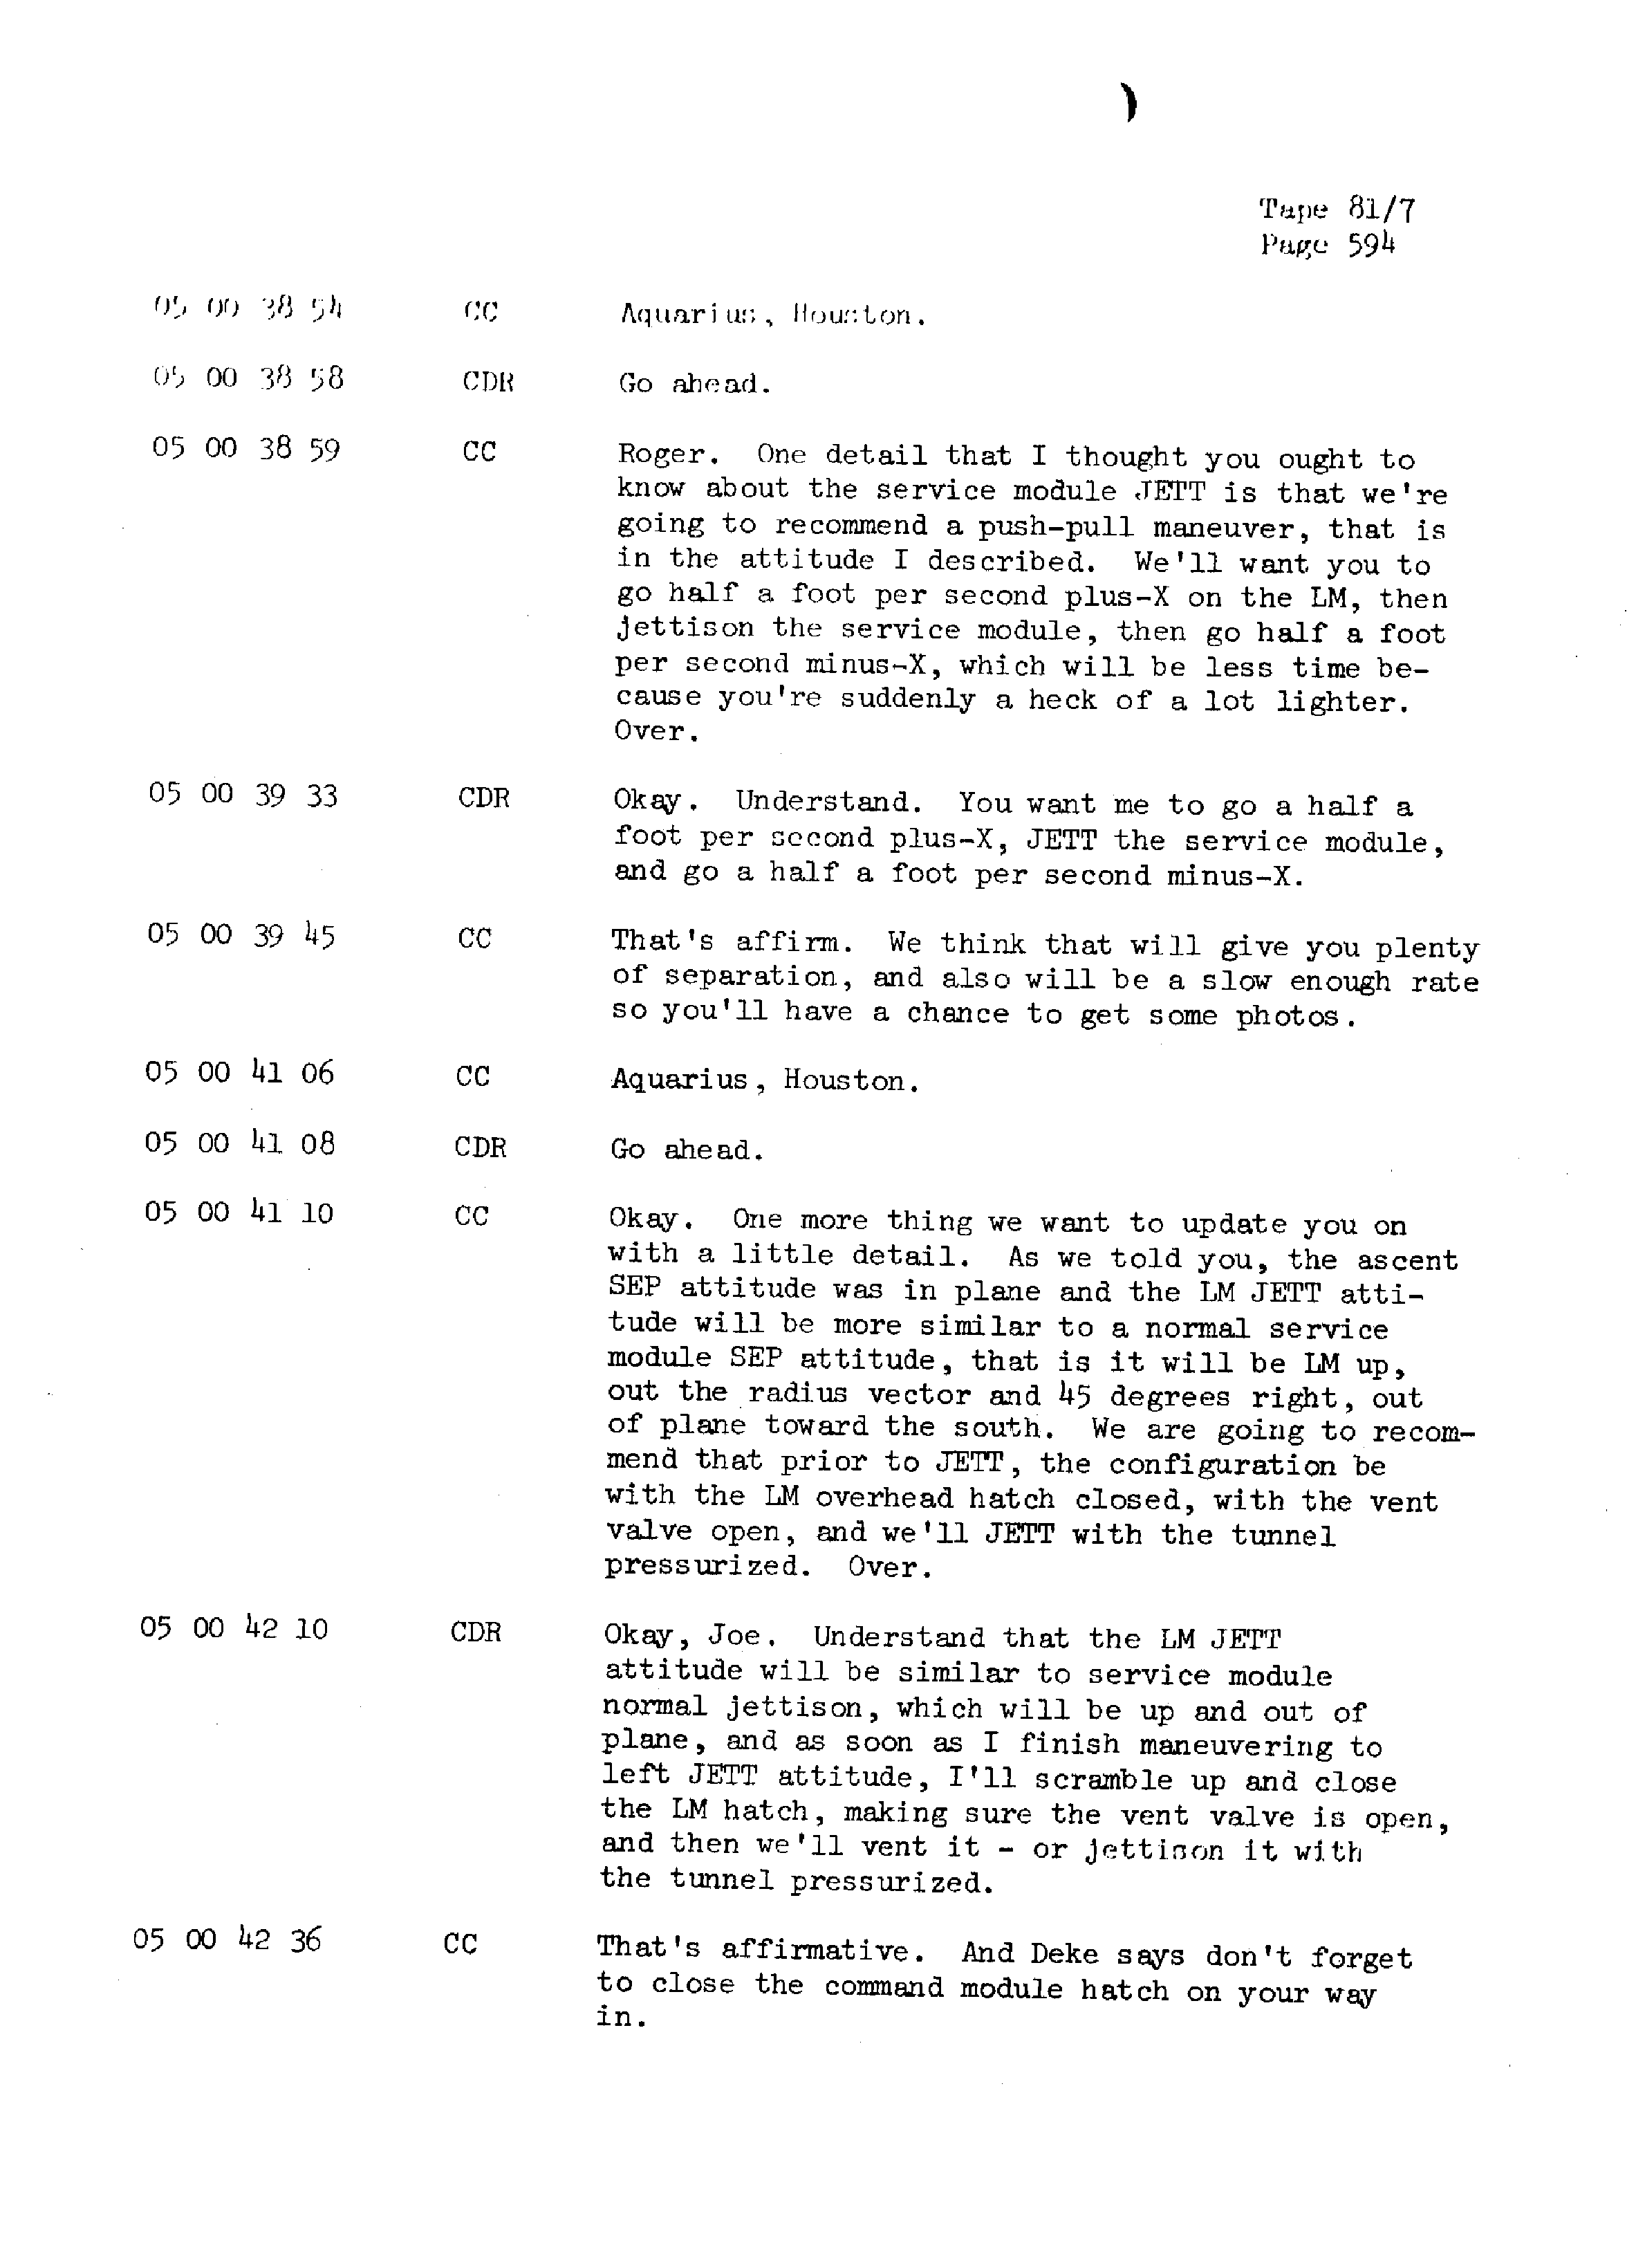 Page 601 of Apollo 13’s original transcript